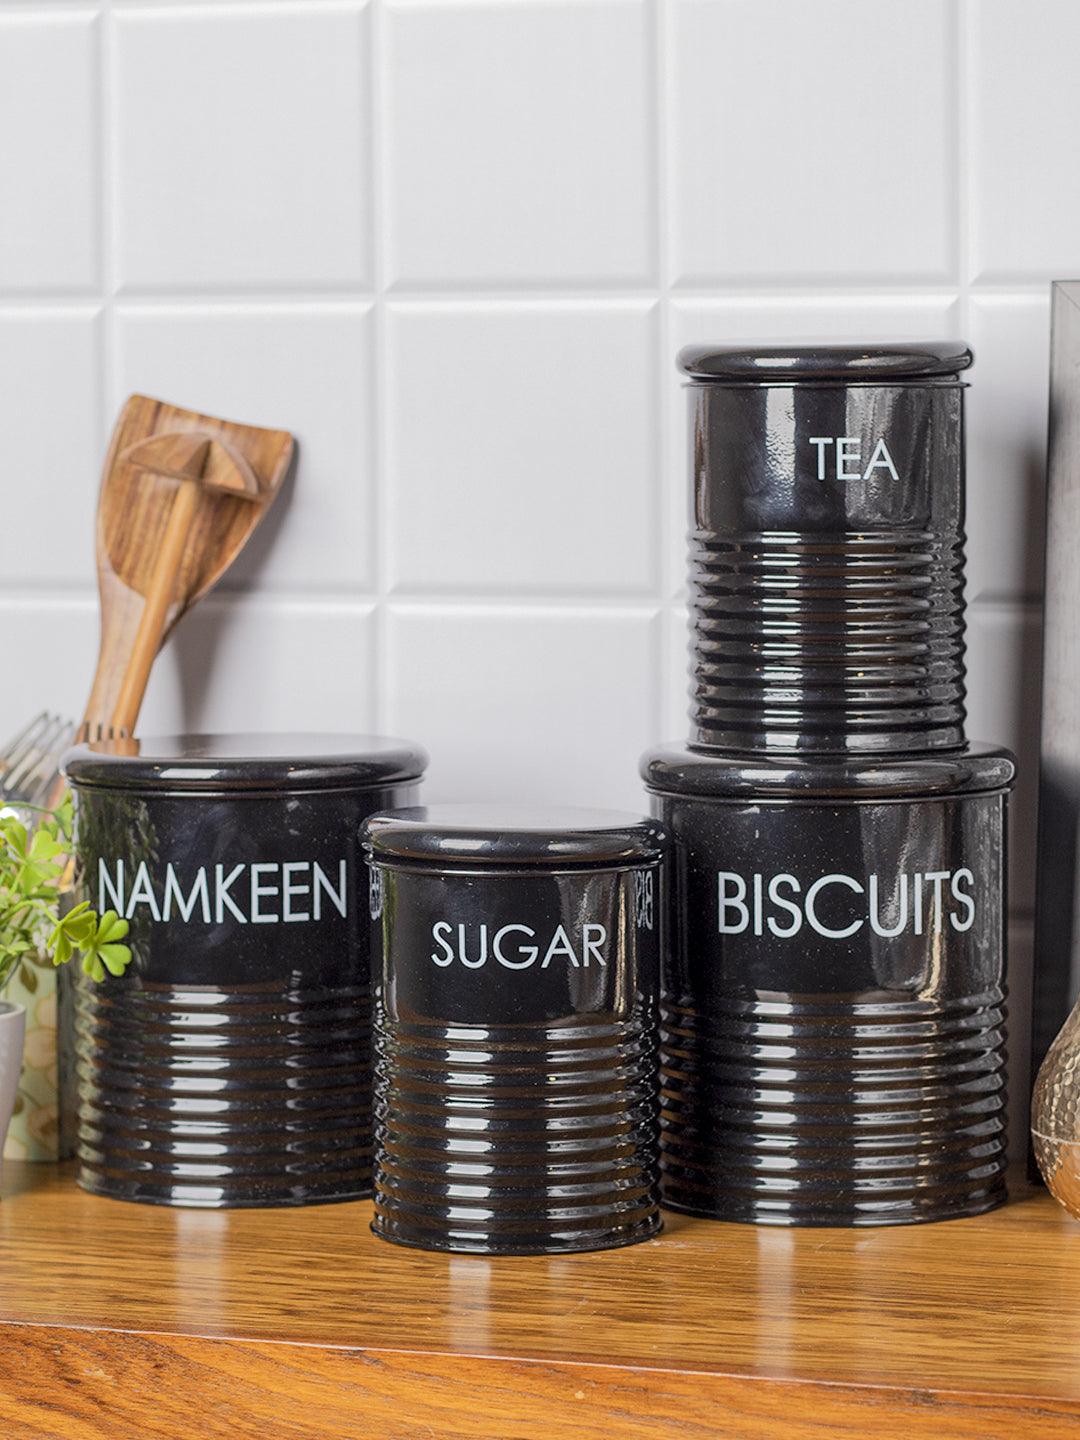 Tea & Sugar Jar (Each 900 Ml) + Biscuits & Namkeen Jar (Each 1700 Ml) - Black, Set Of 4 - MARKET 99